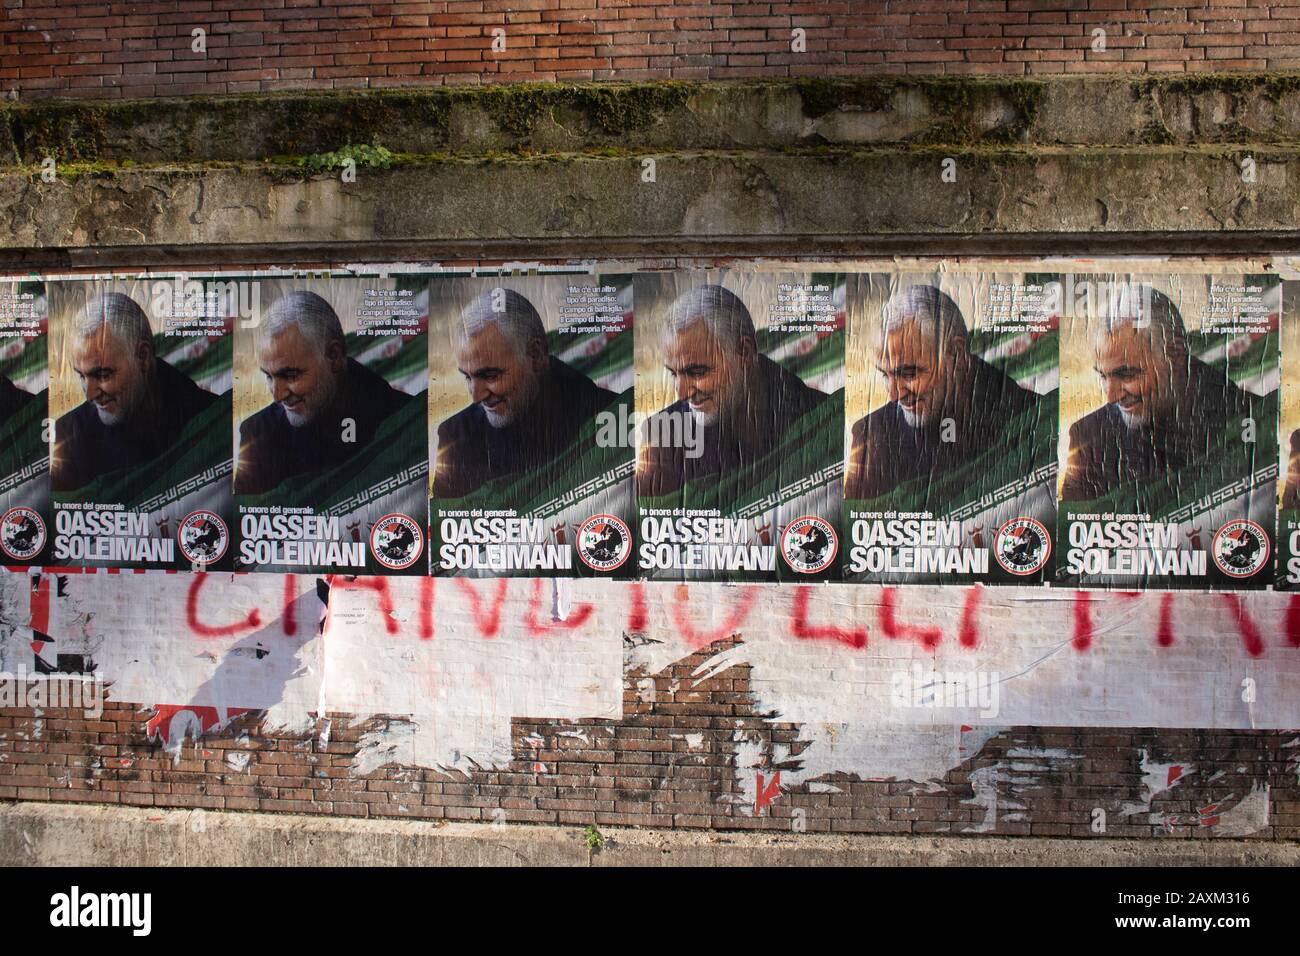 Rome, Italie - 12 février 2020: Des affiches honorant le général iranien Qassem Soleimani, qui dirigeait la Force des soldats de la révolution islamique, ont été tuées par une frappe militaire américaine en Irak le 3 janvier 2020. La mort de Qassem Soleimani a soulevé des tensions entre l'Amérique et l'Iran qui avaient juré de venger sa mort. Amer ghazzal/Alay Live News Banque D'Images